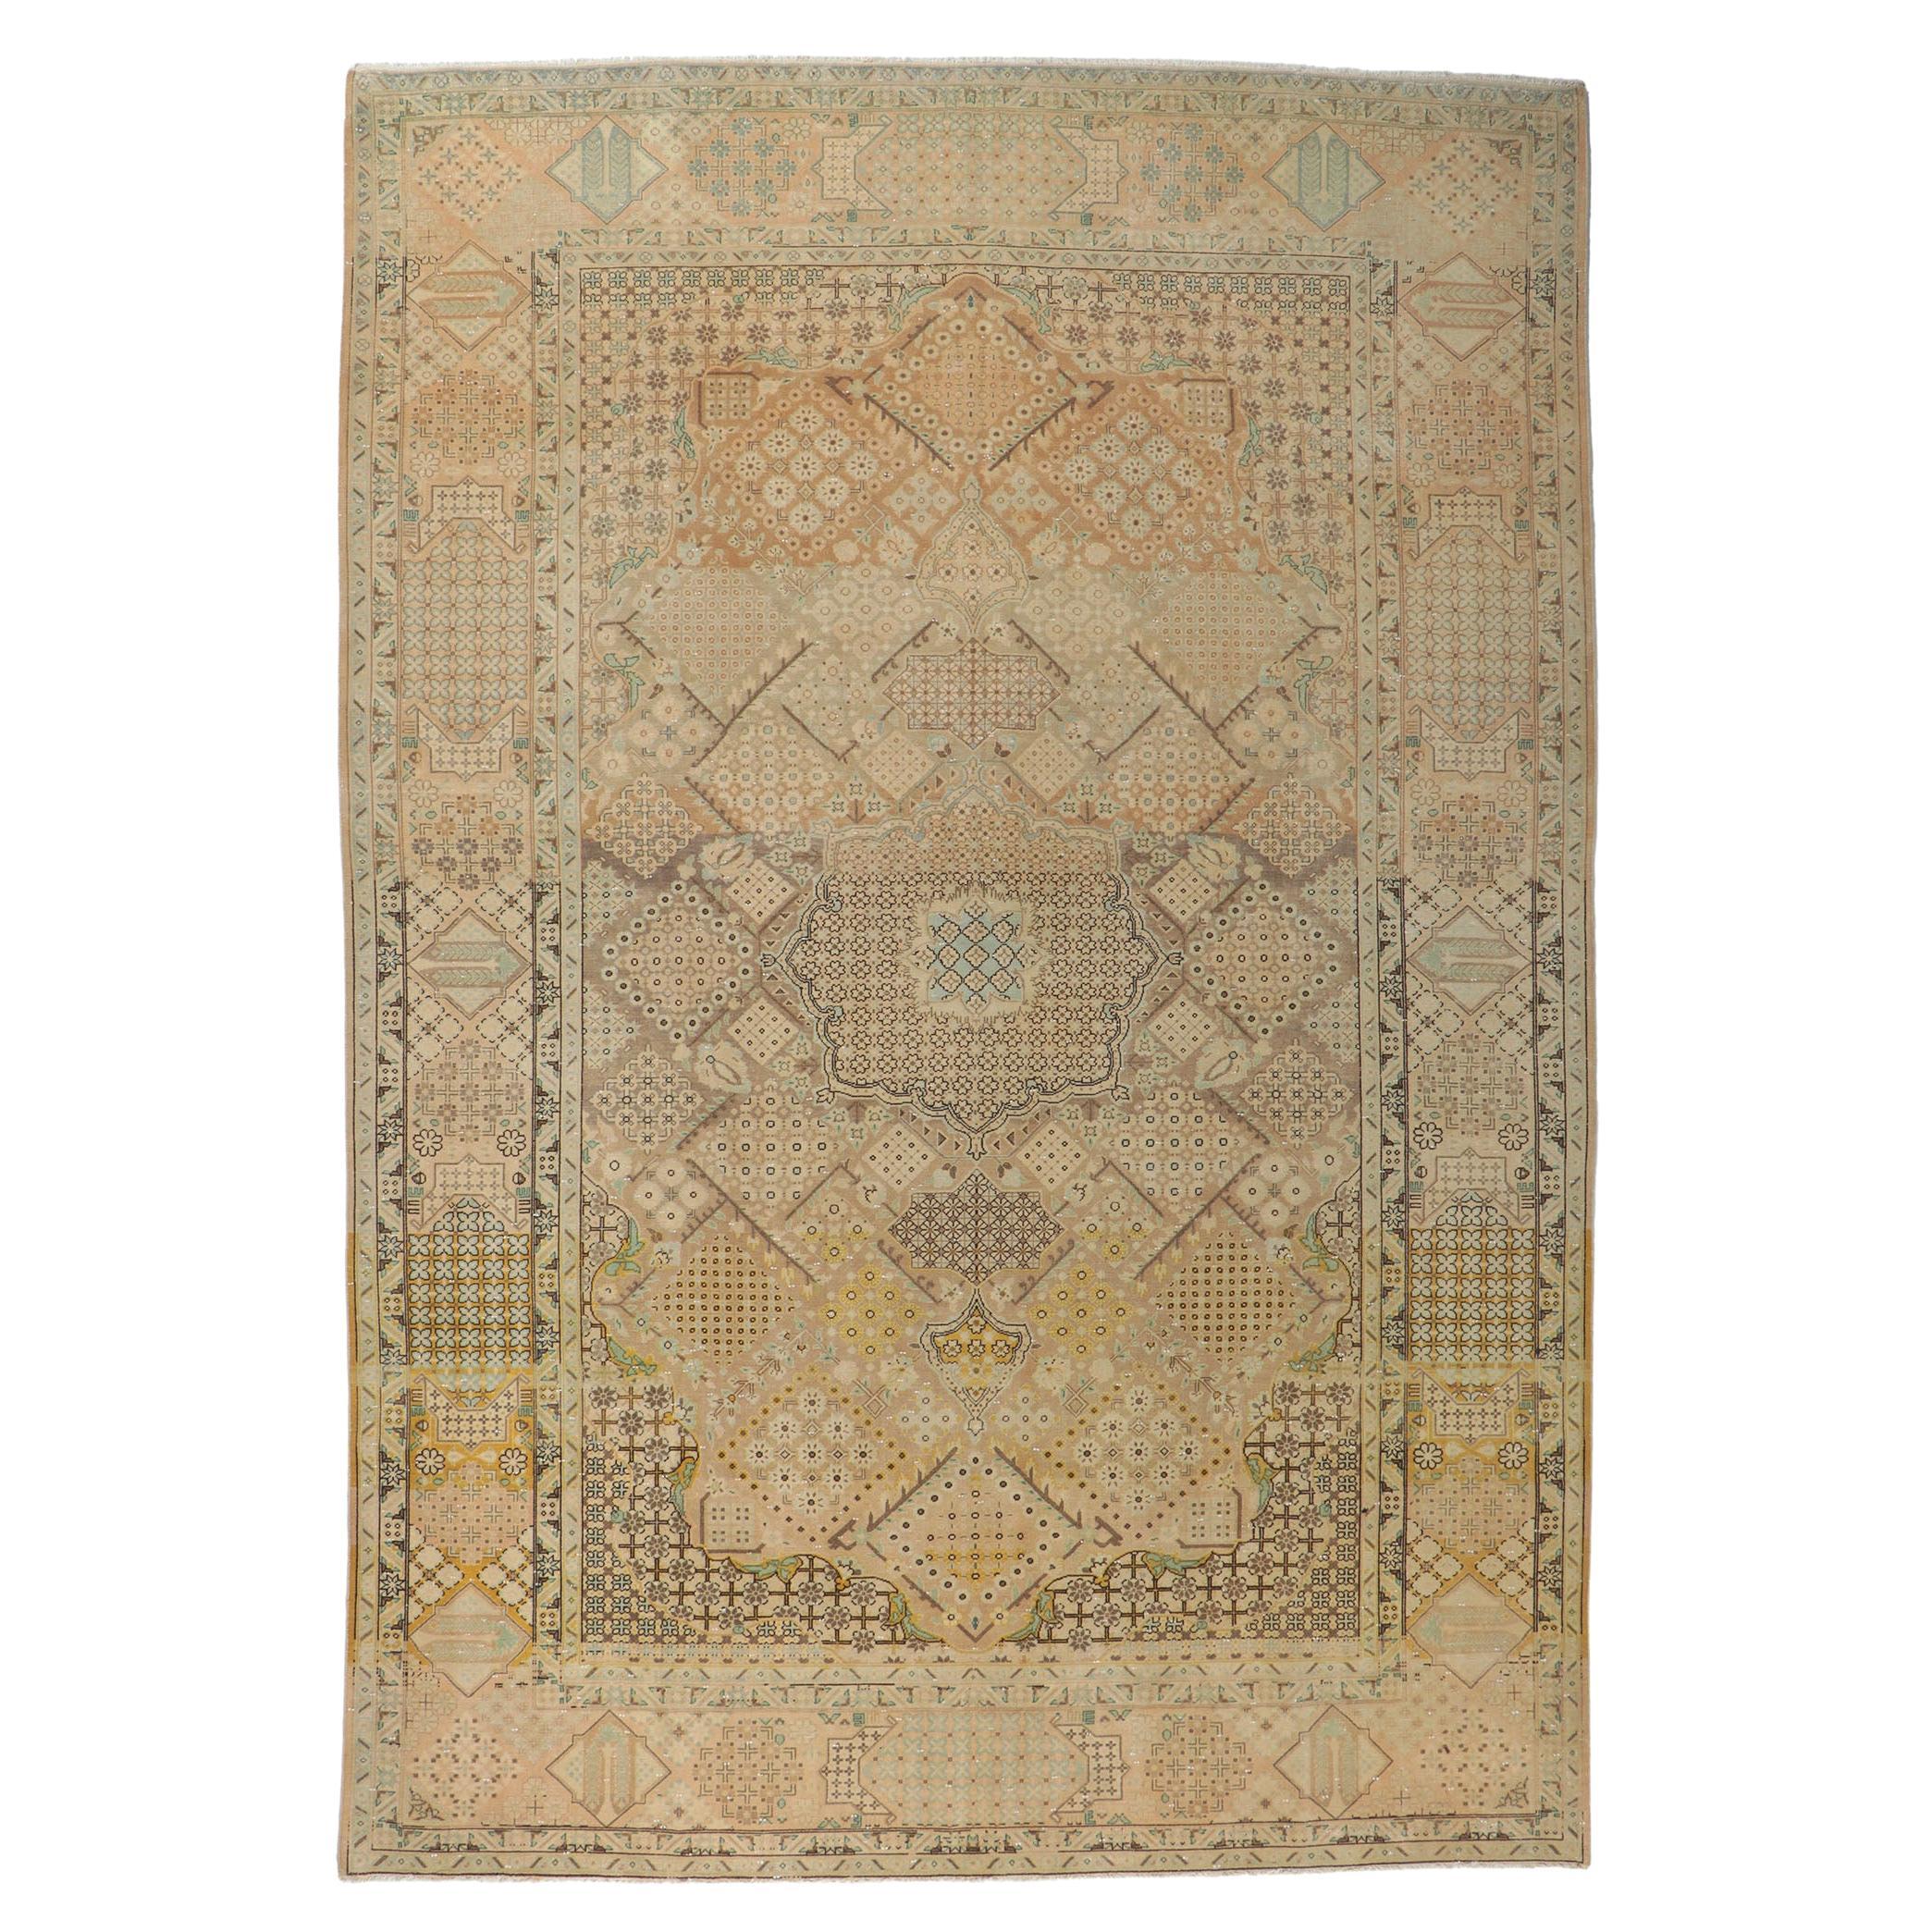 Persischer Joshegan-Teppich im Vintage-Stil mit Millefleur-Design und verblassten, weichen Farben